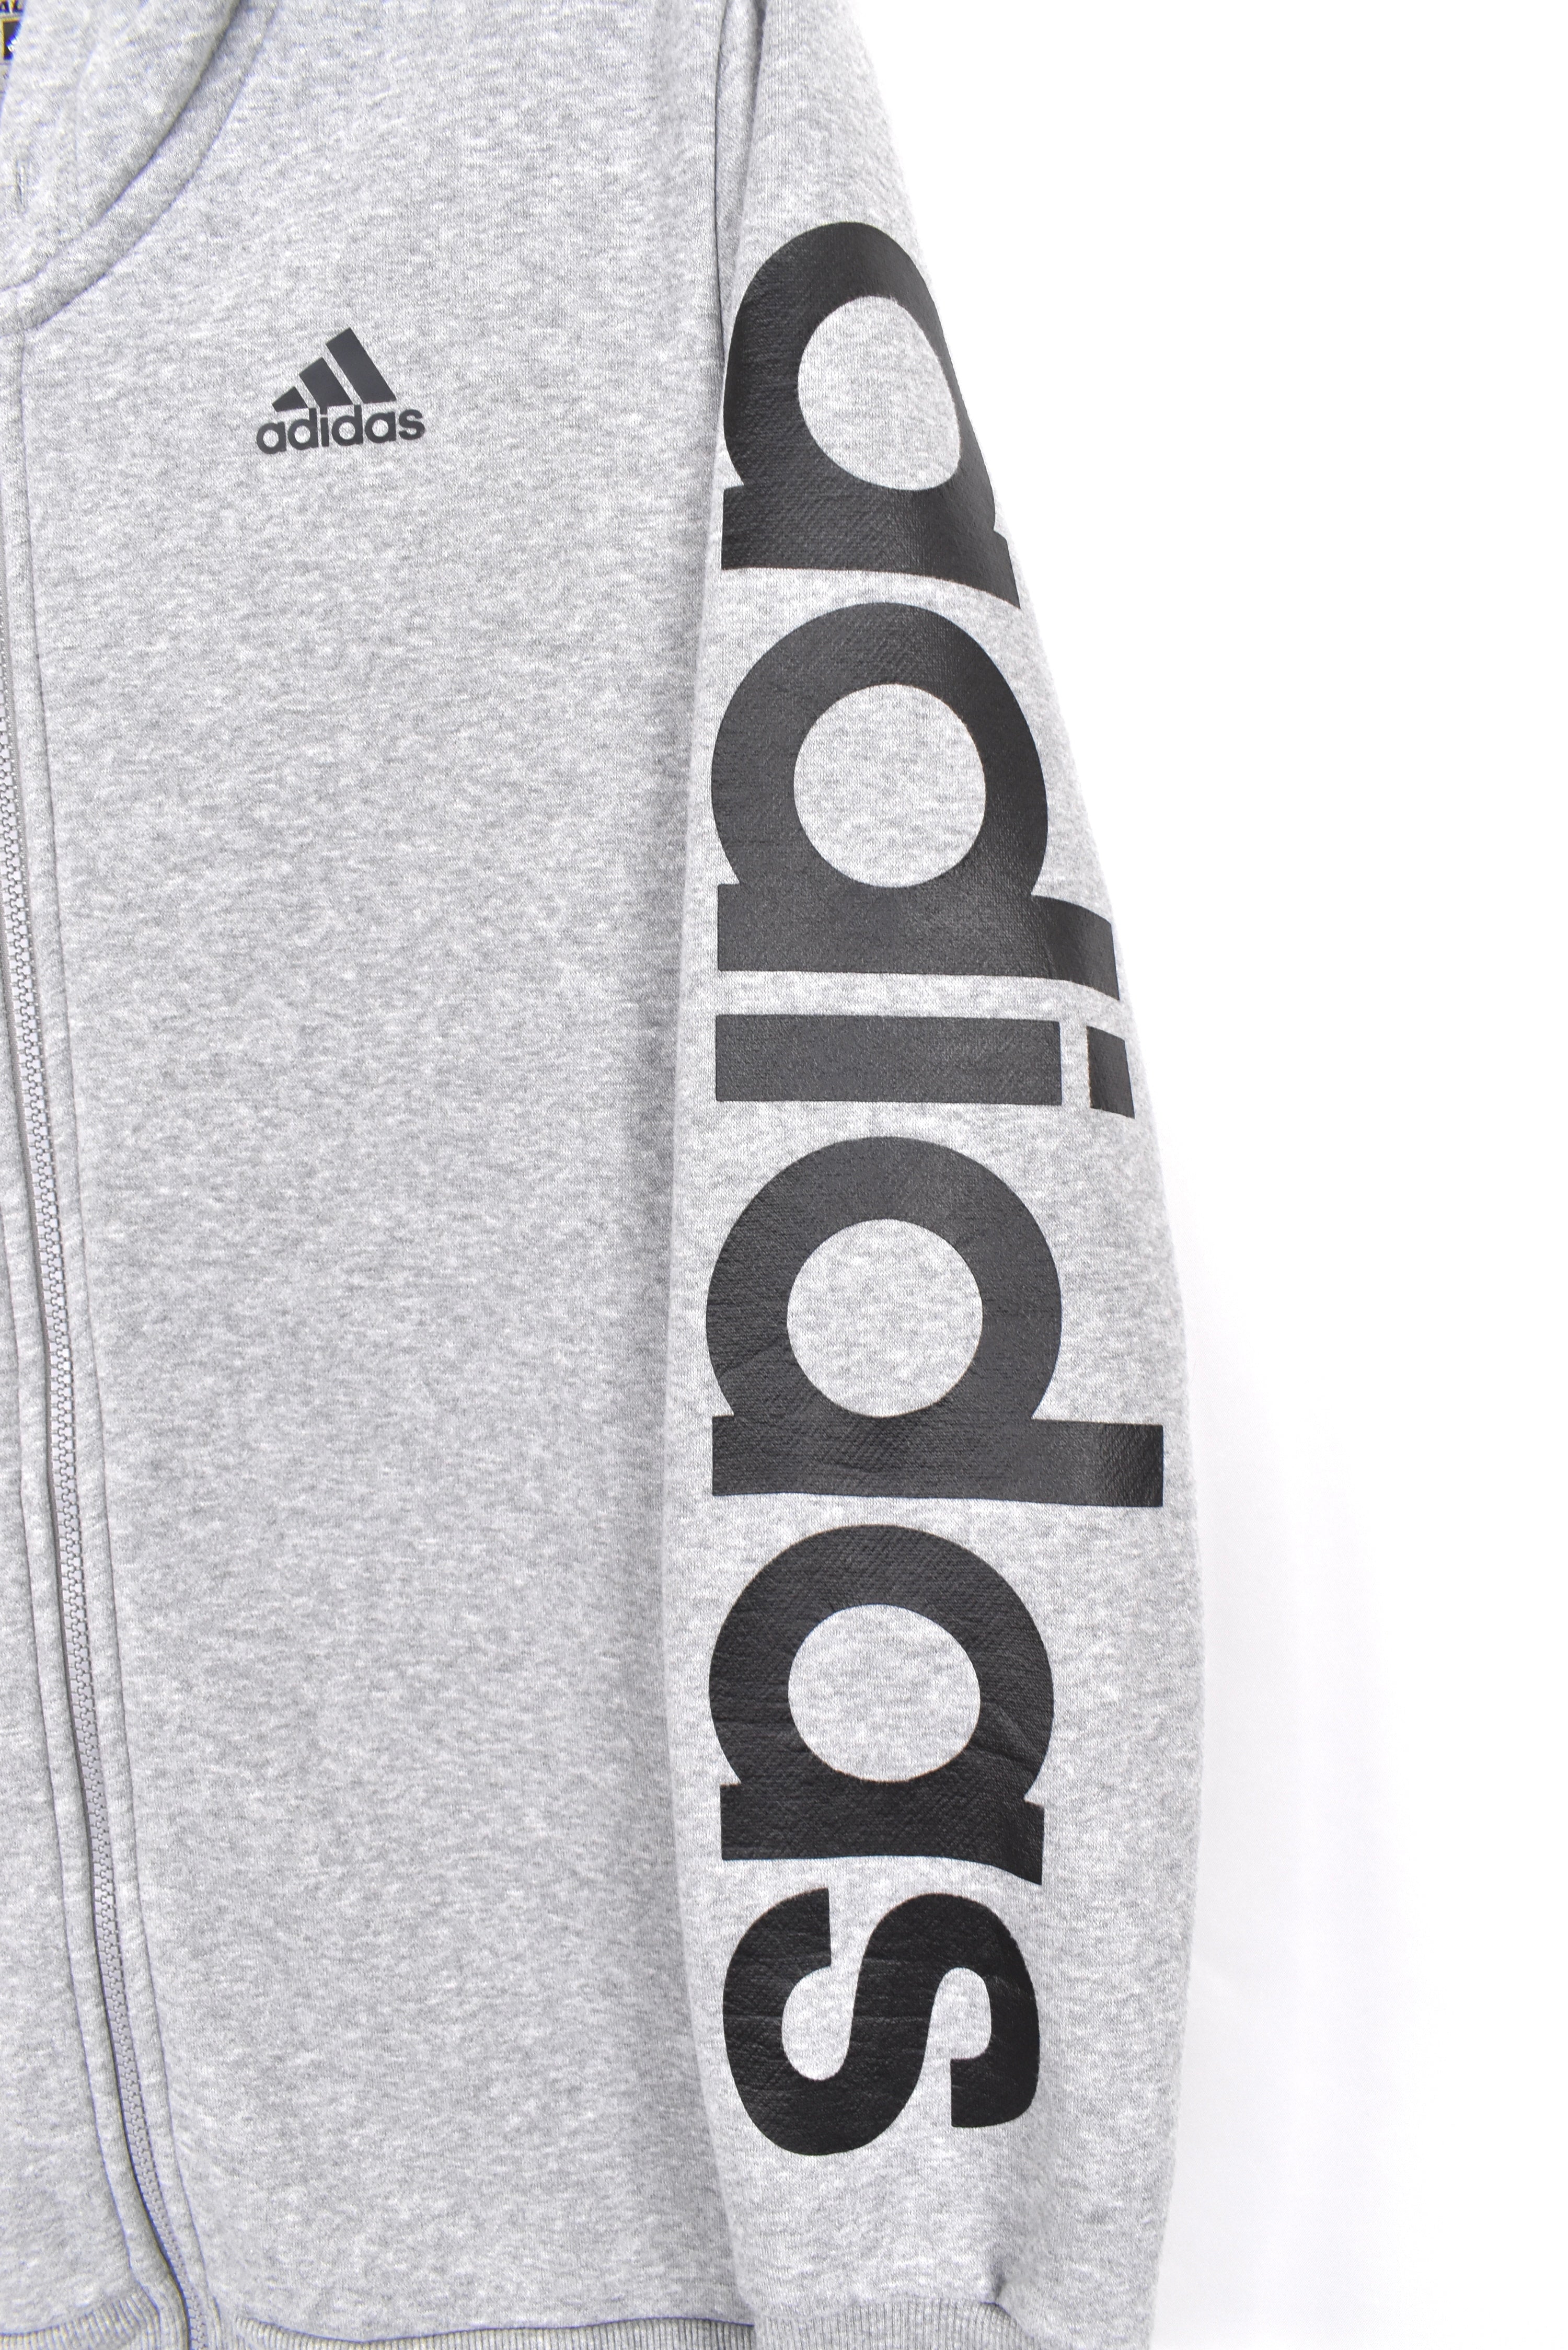 Modern Adidas hoodie, grey graphic sweatshirt - AU Medium ADIDAS